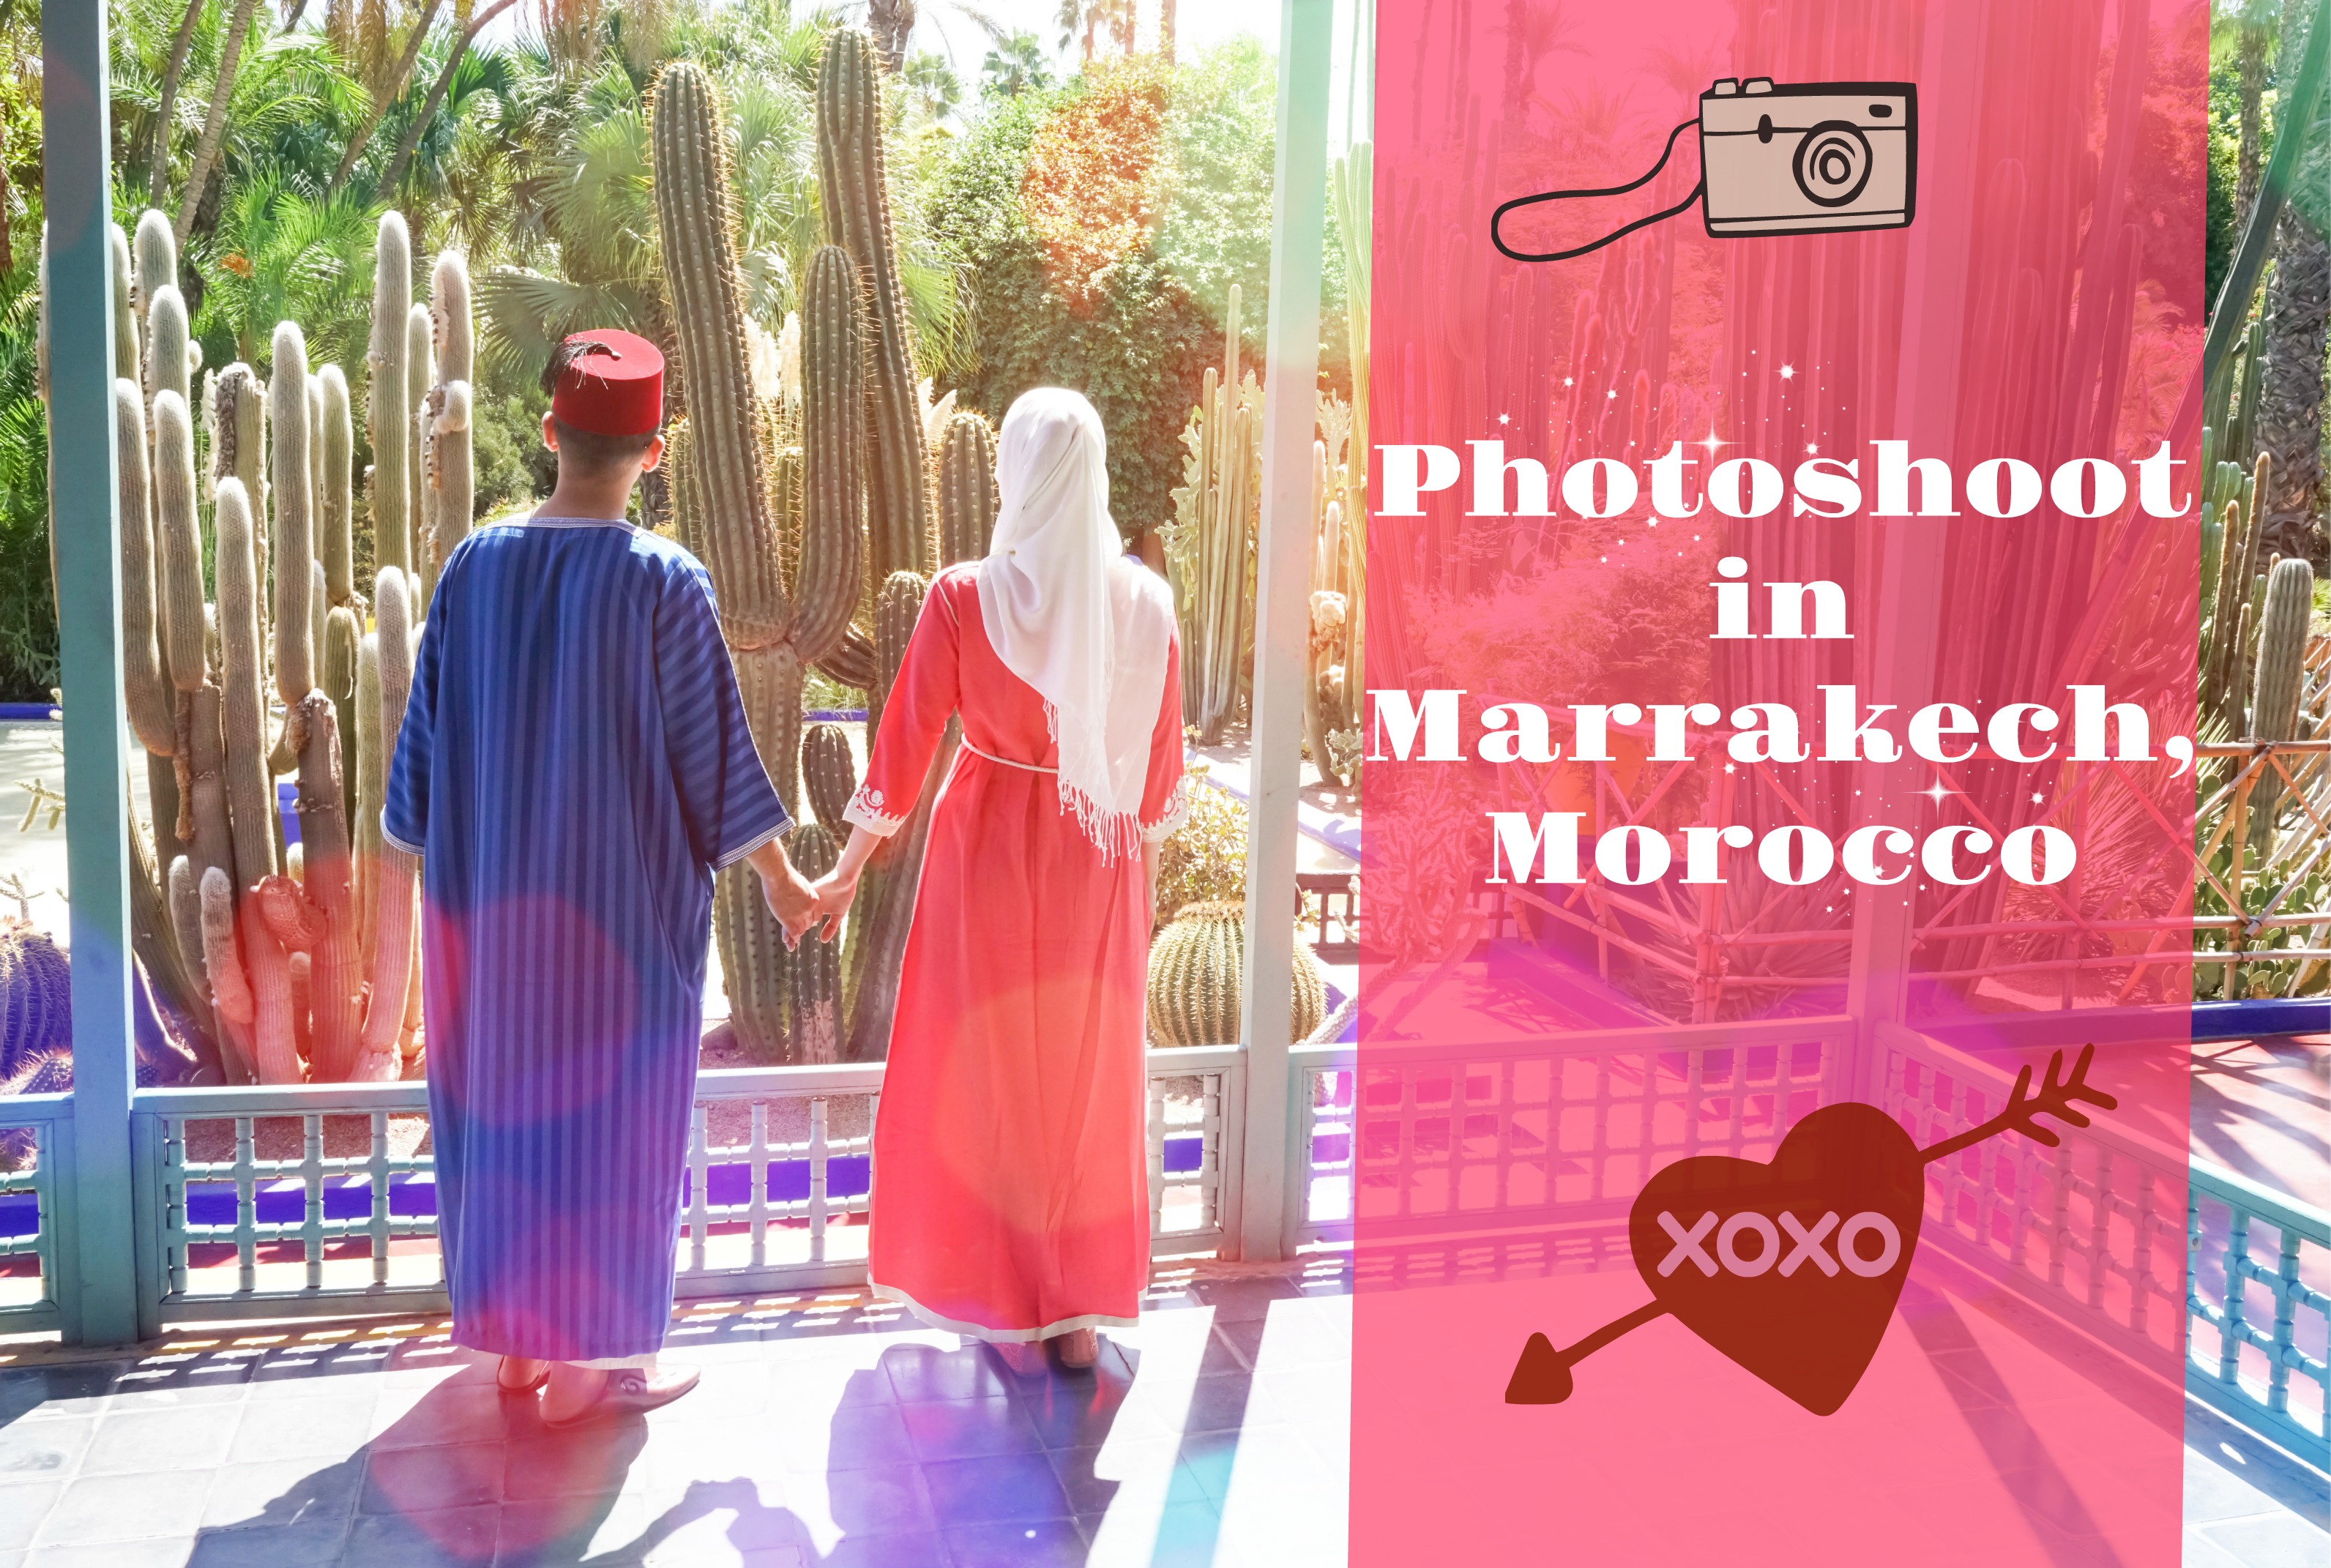 Morocco Photoshoot.jpg